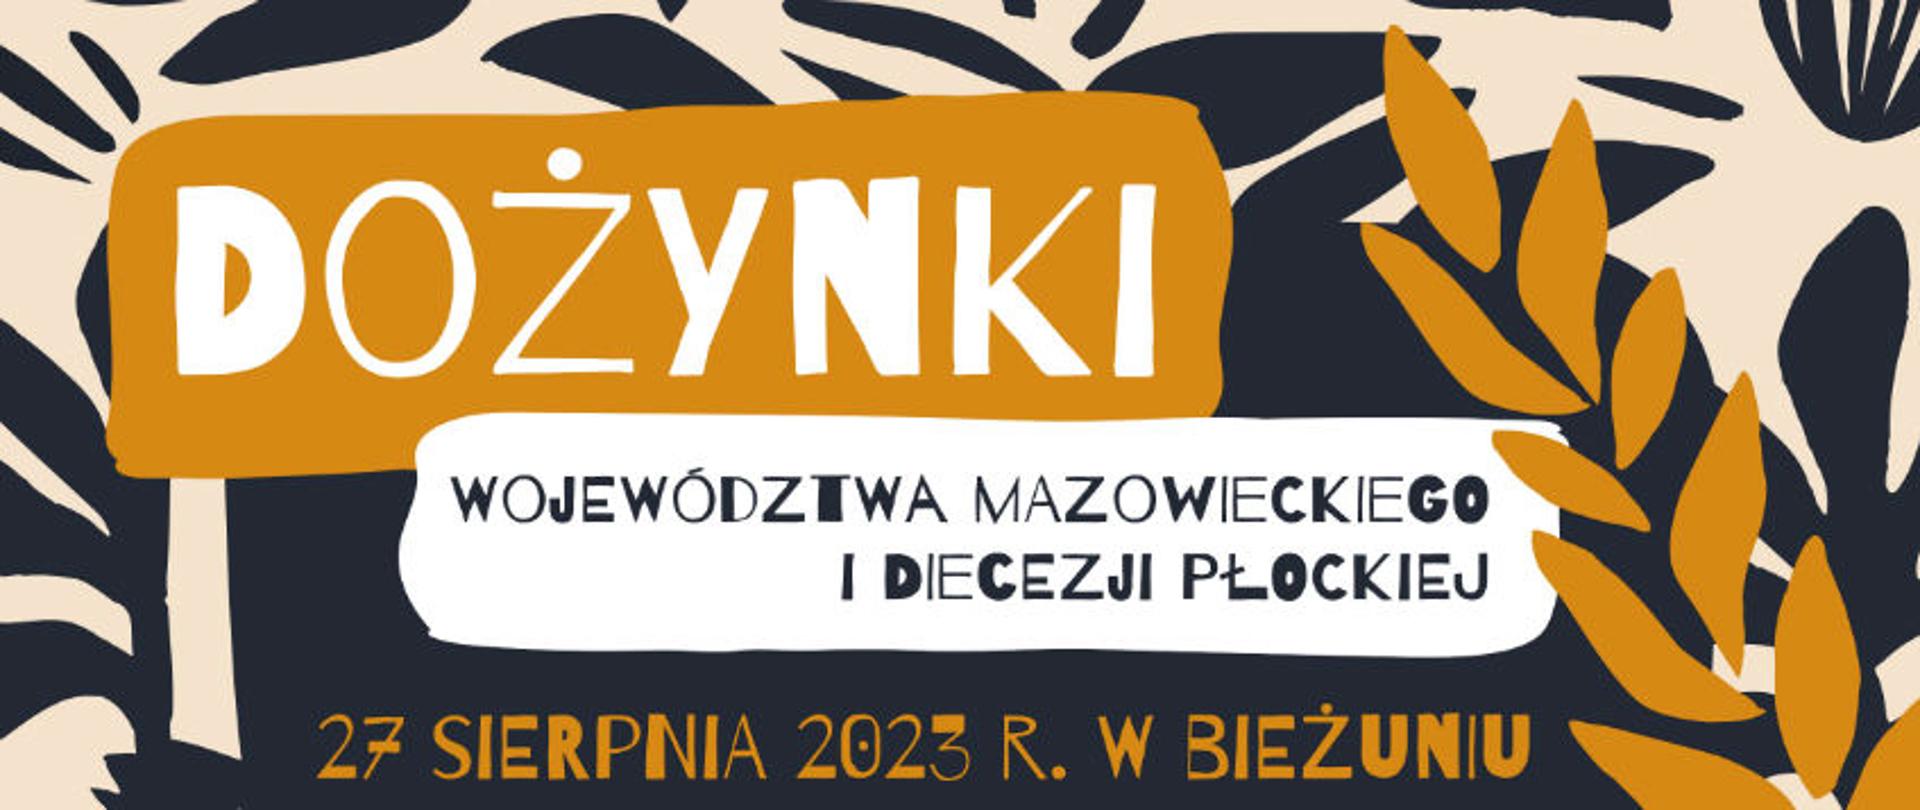 Plakat promujący dożynki województwa mazowieckiego